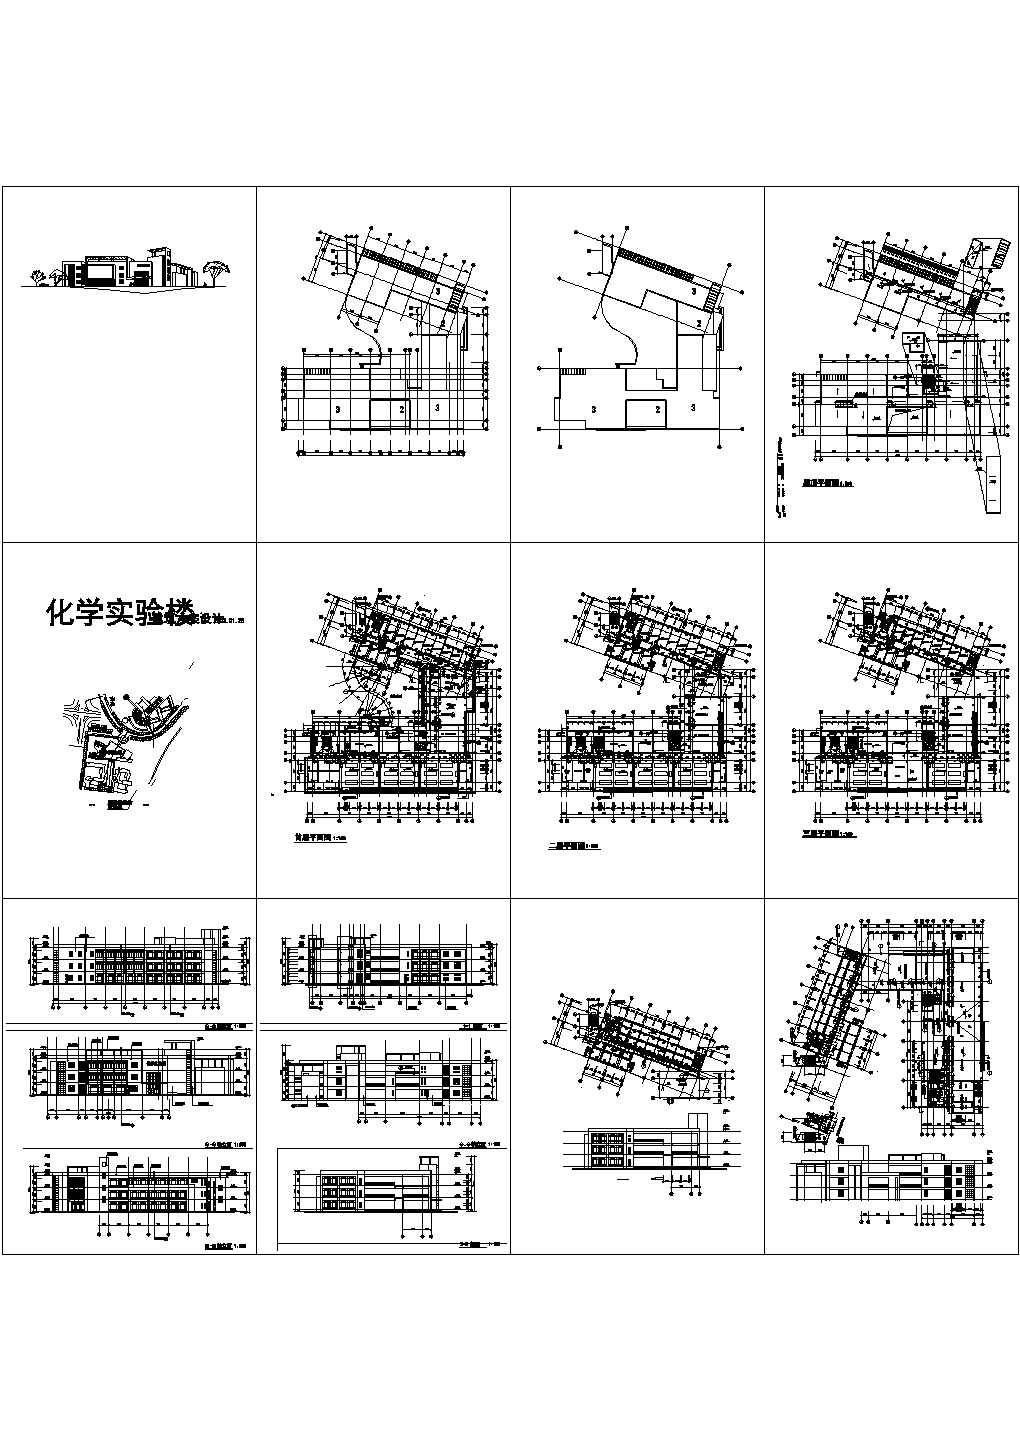 【无锡】某学校化学实验楼建筑设计方案图纸